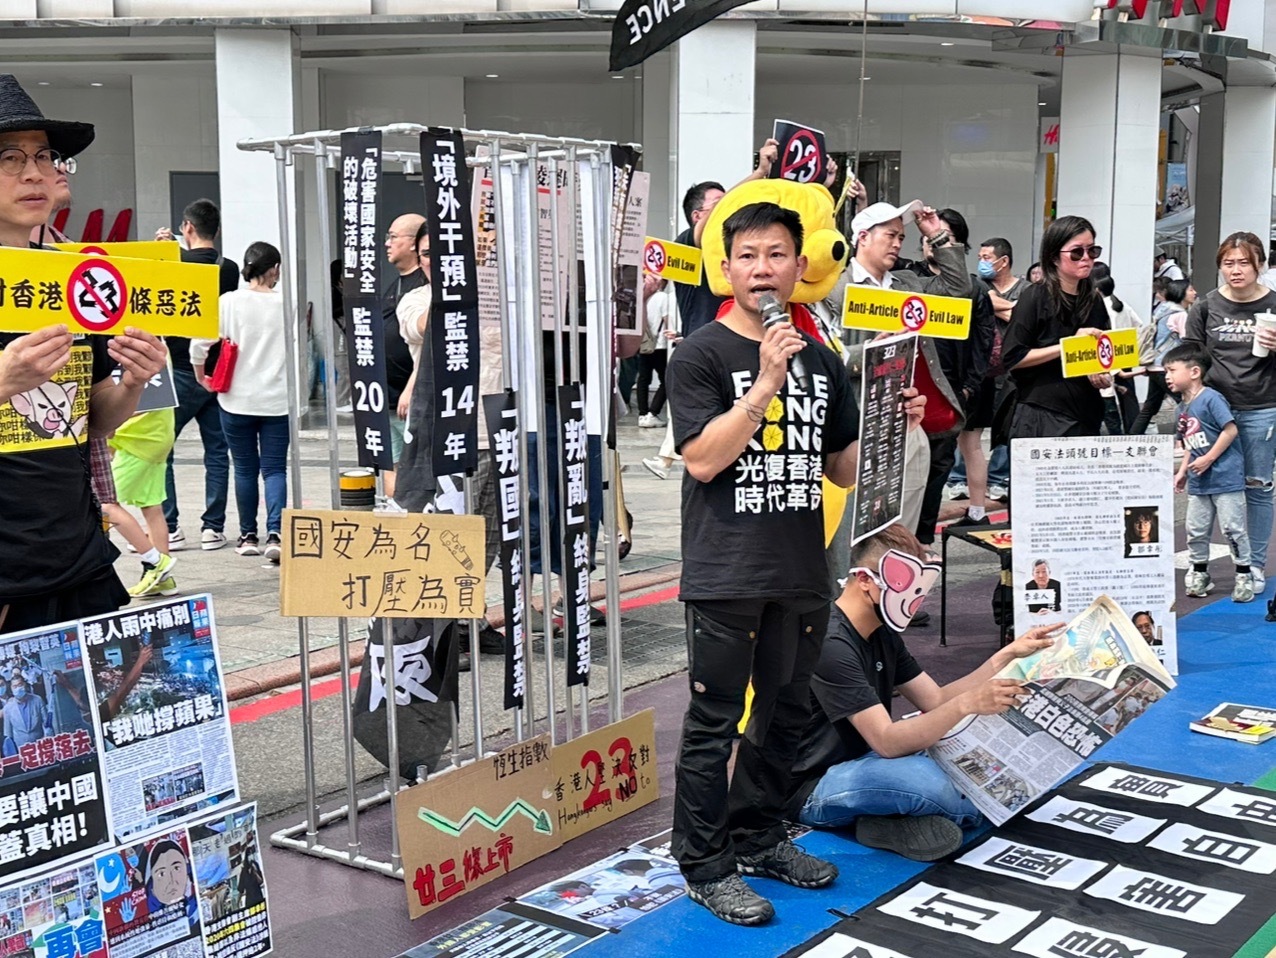 反港23條立法示威 在台港人籲保護在外港人、制裁港官員及法官